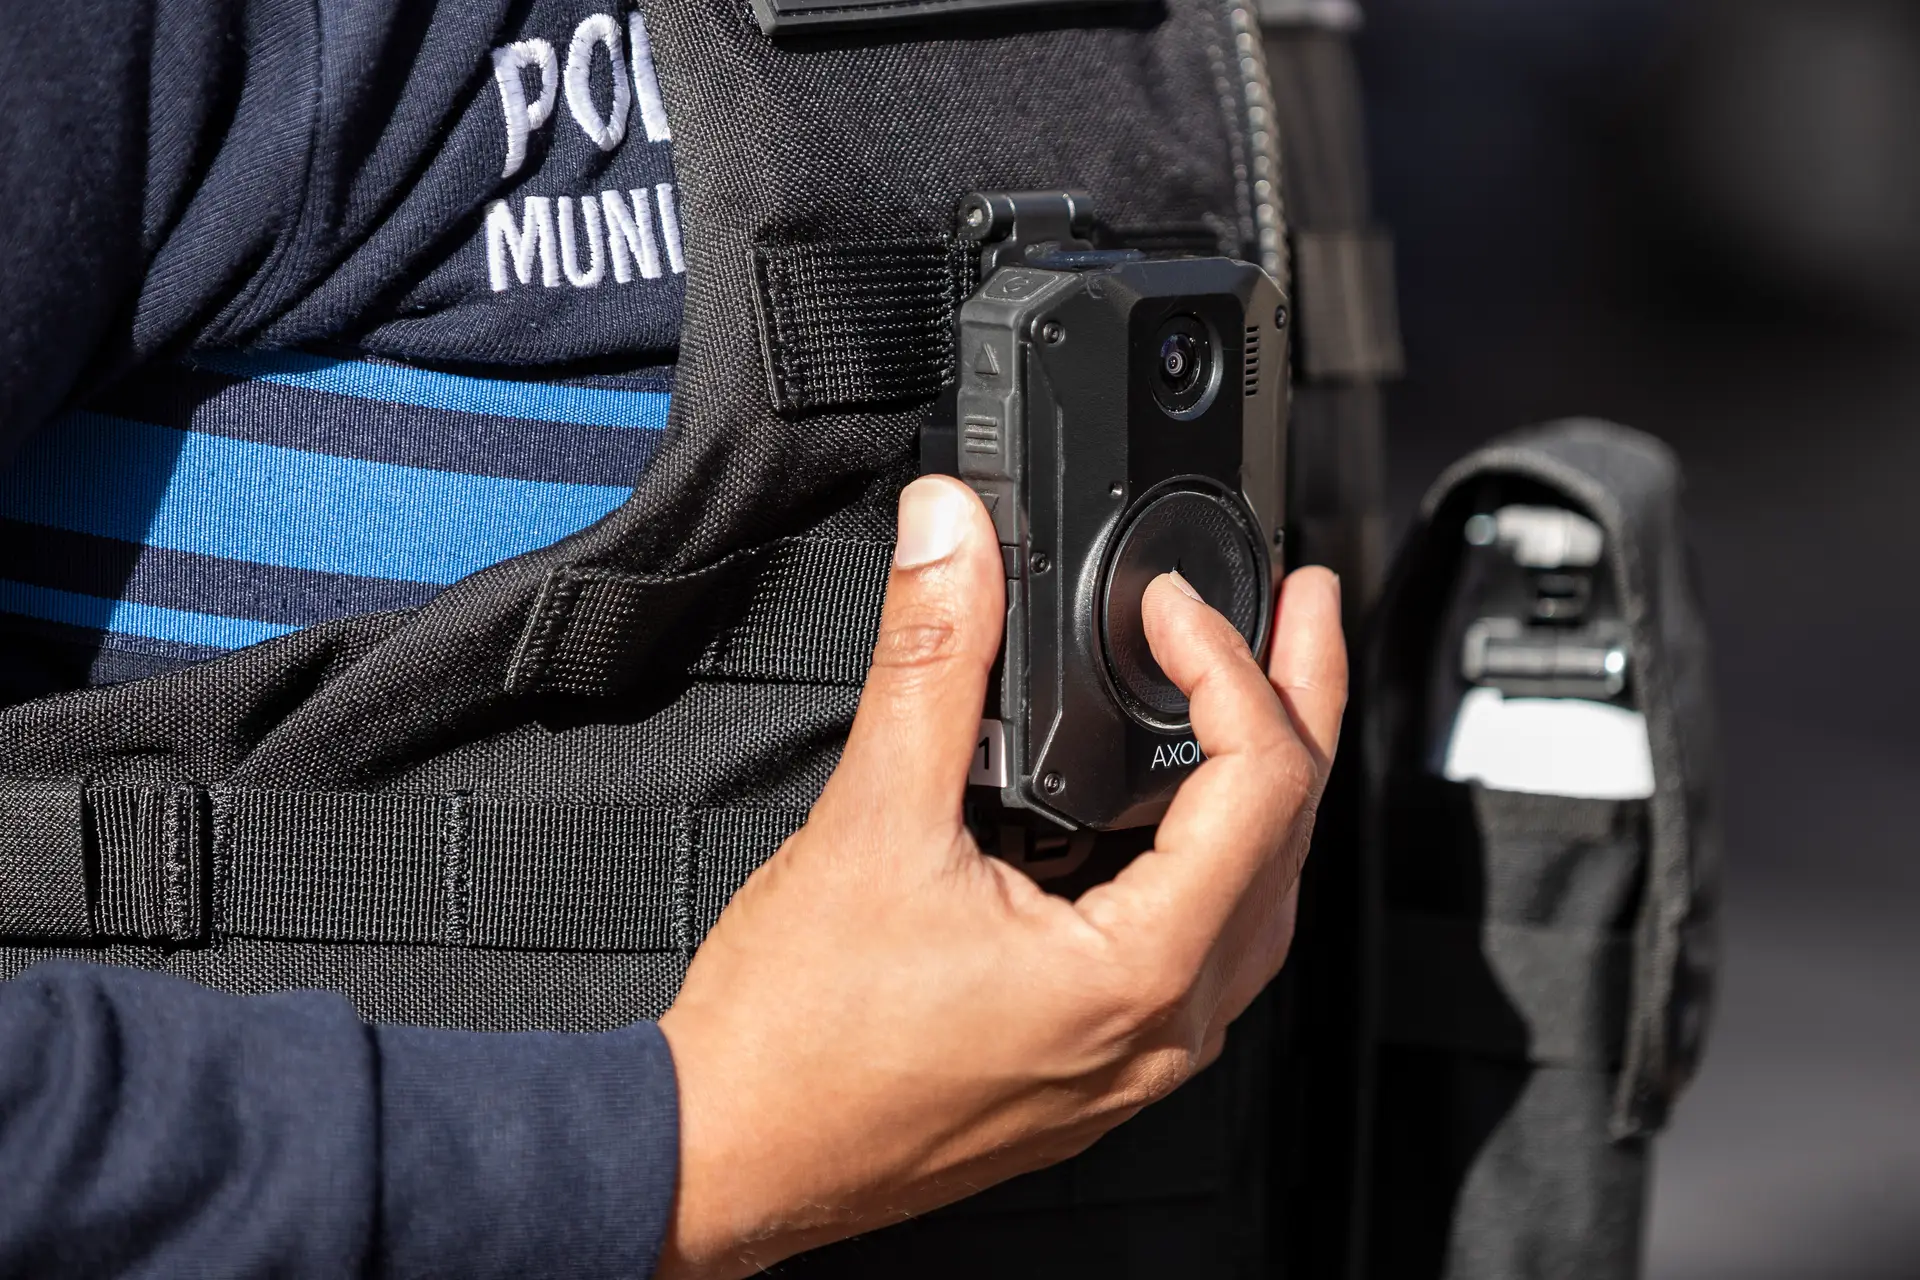 Os polícias portugueses vão começar a poder filmar. E agora? “Deixam de existir duas versões da mesma história”, dizem em Madrid